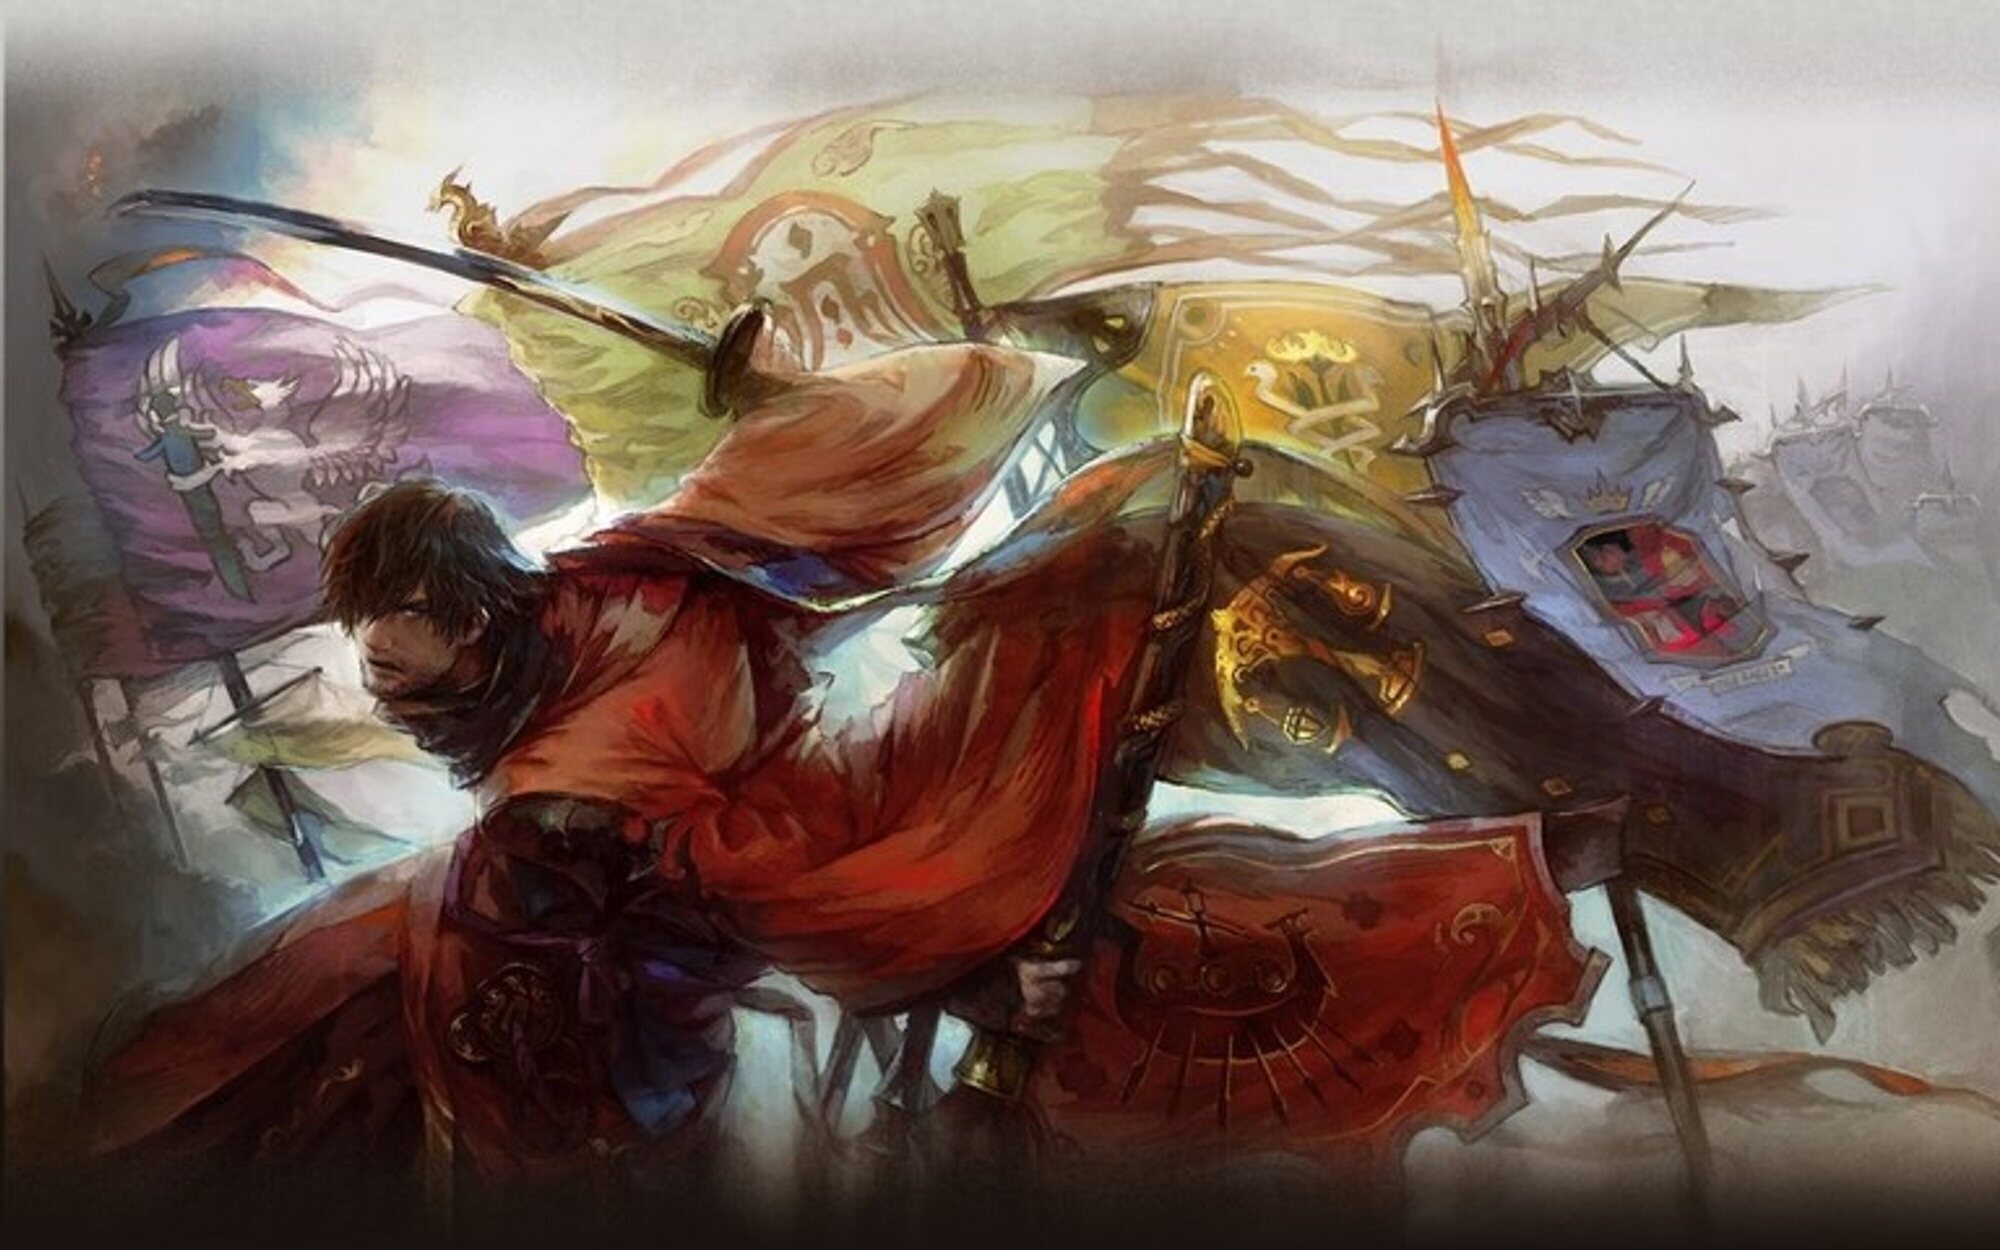 La expansión 'Stormblood' de 'Final Fantasy XIV' gratis por tiempo limitado